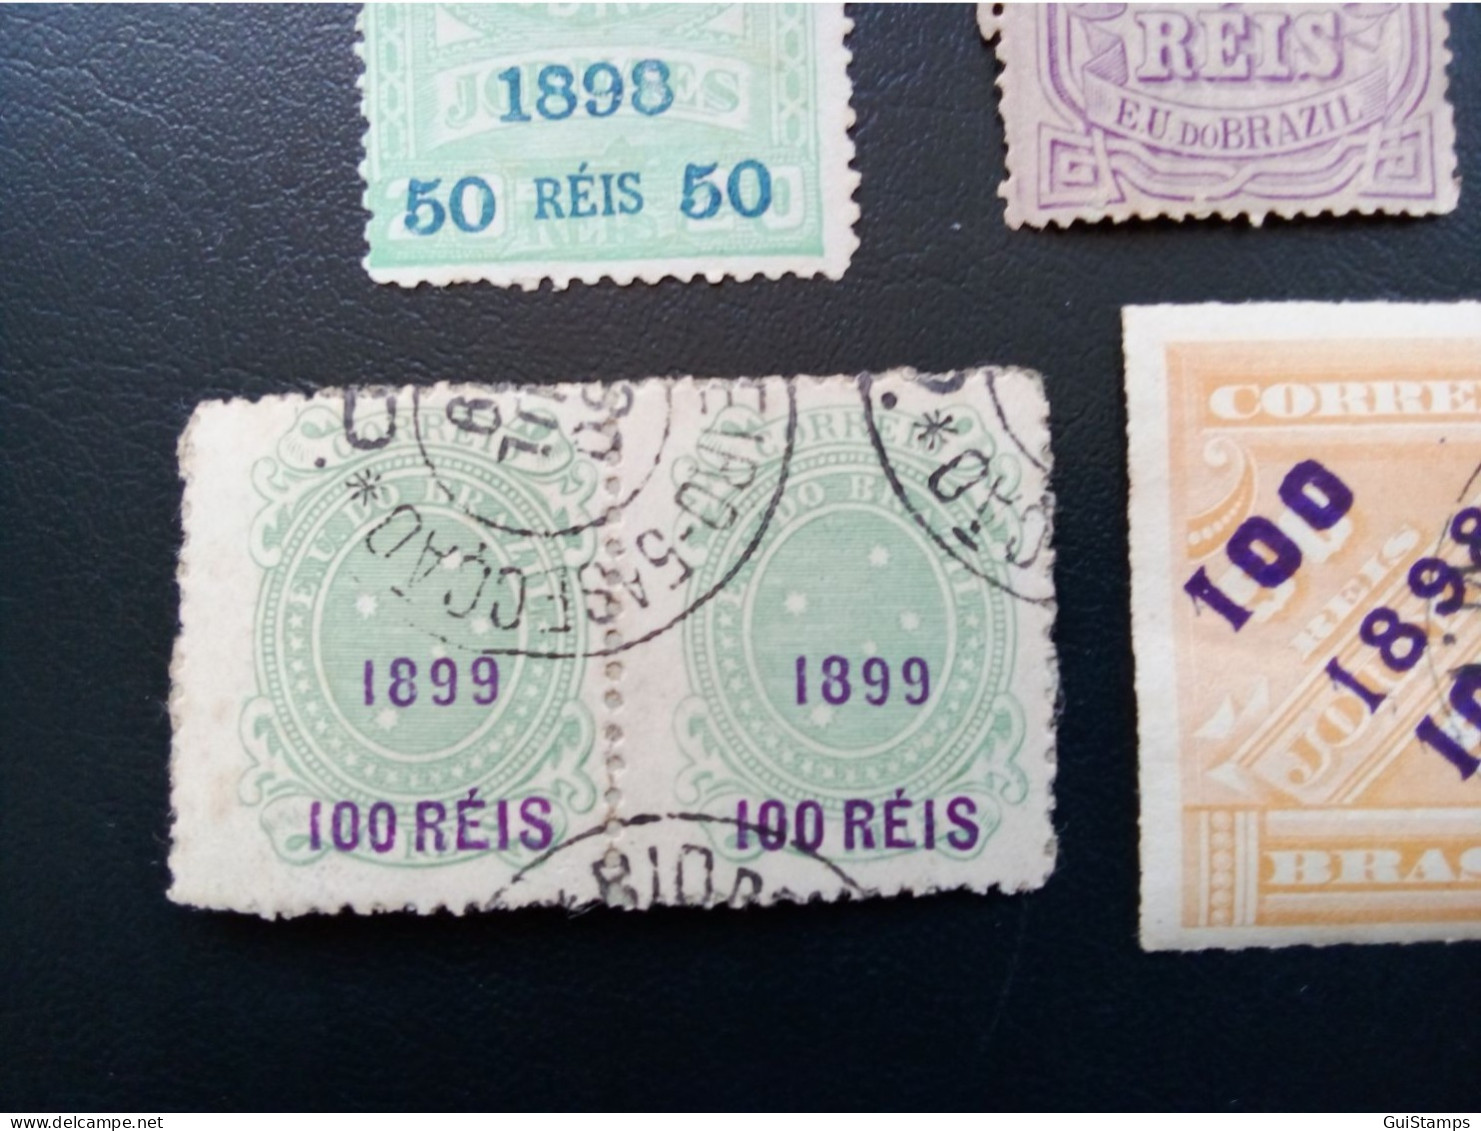 Rare selection avec double 1899 (Timbres Journeaux et Classic) Valeur catalogue 245 euros (Voir description)